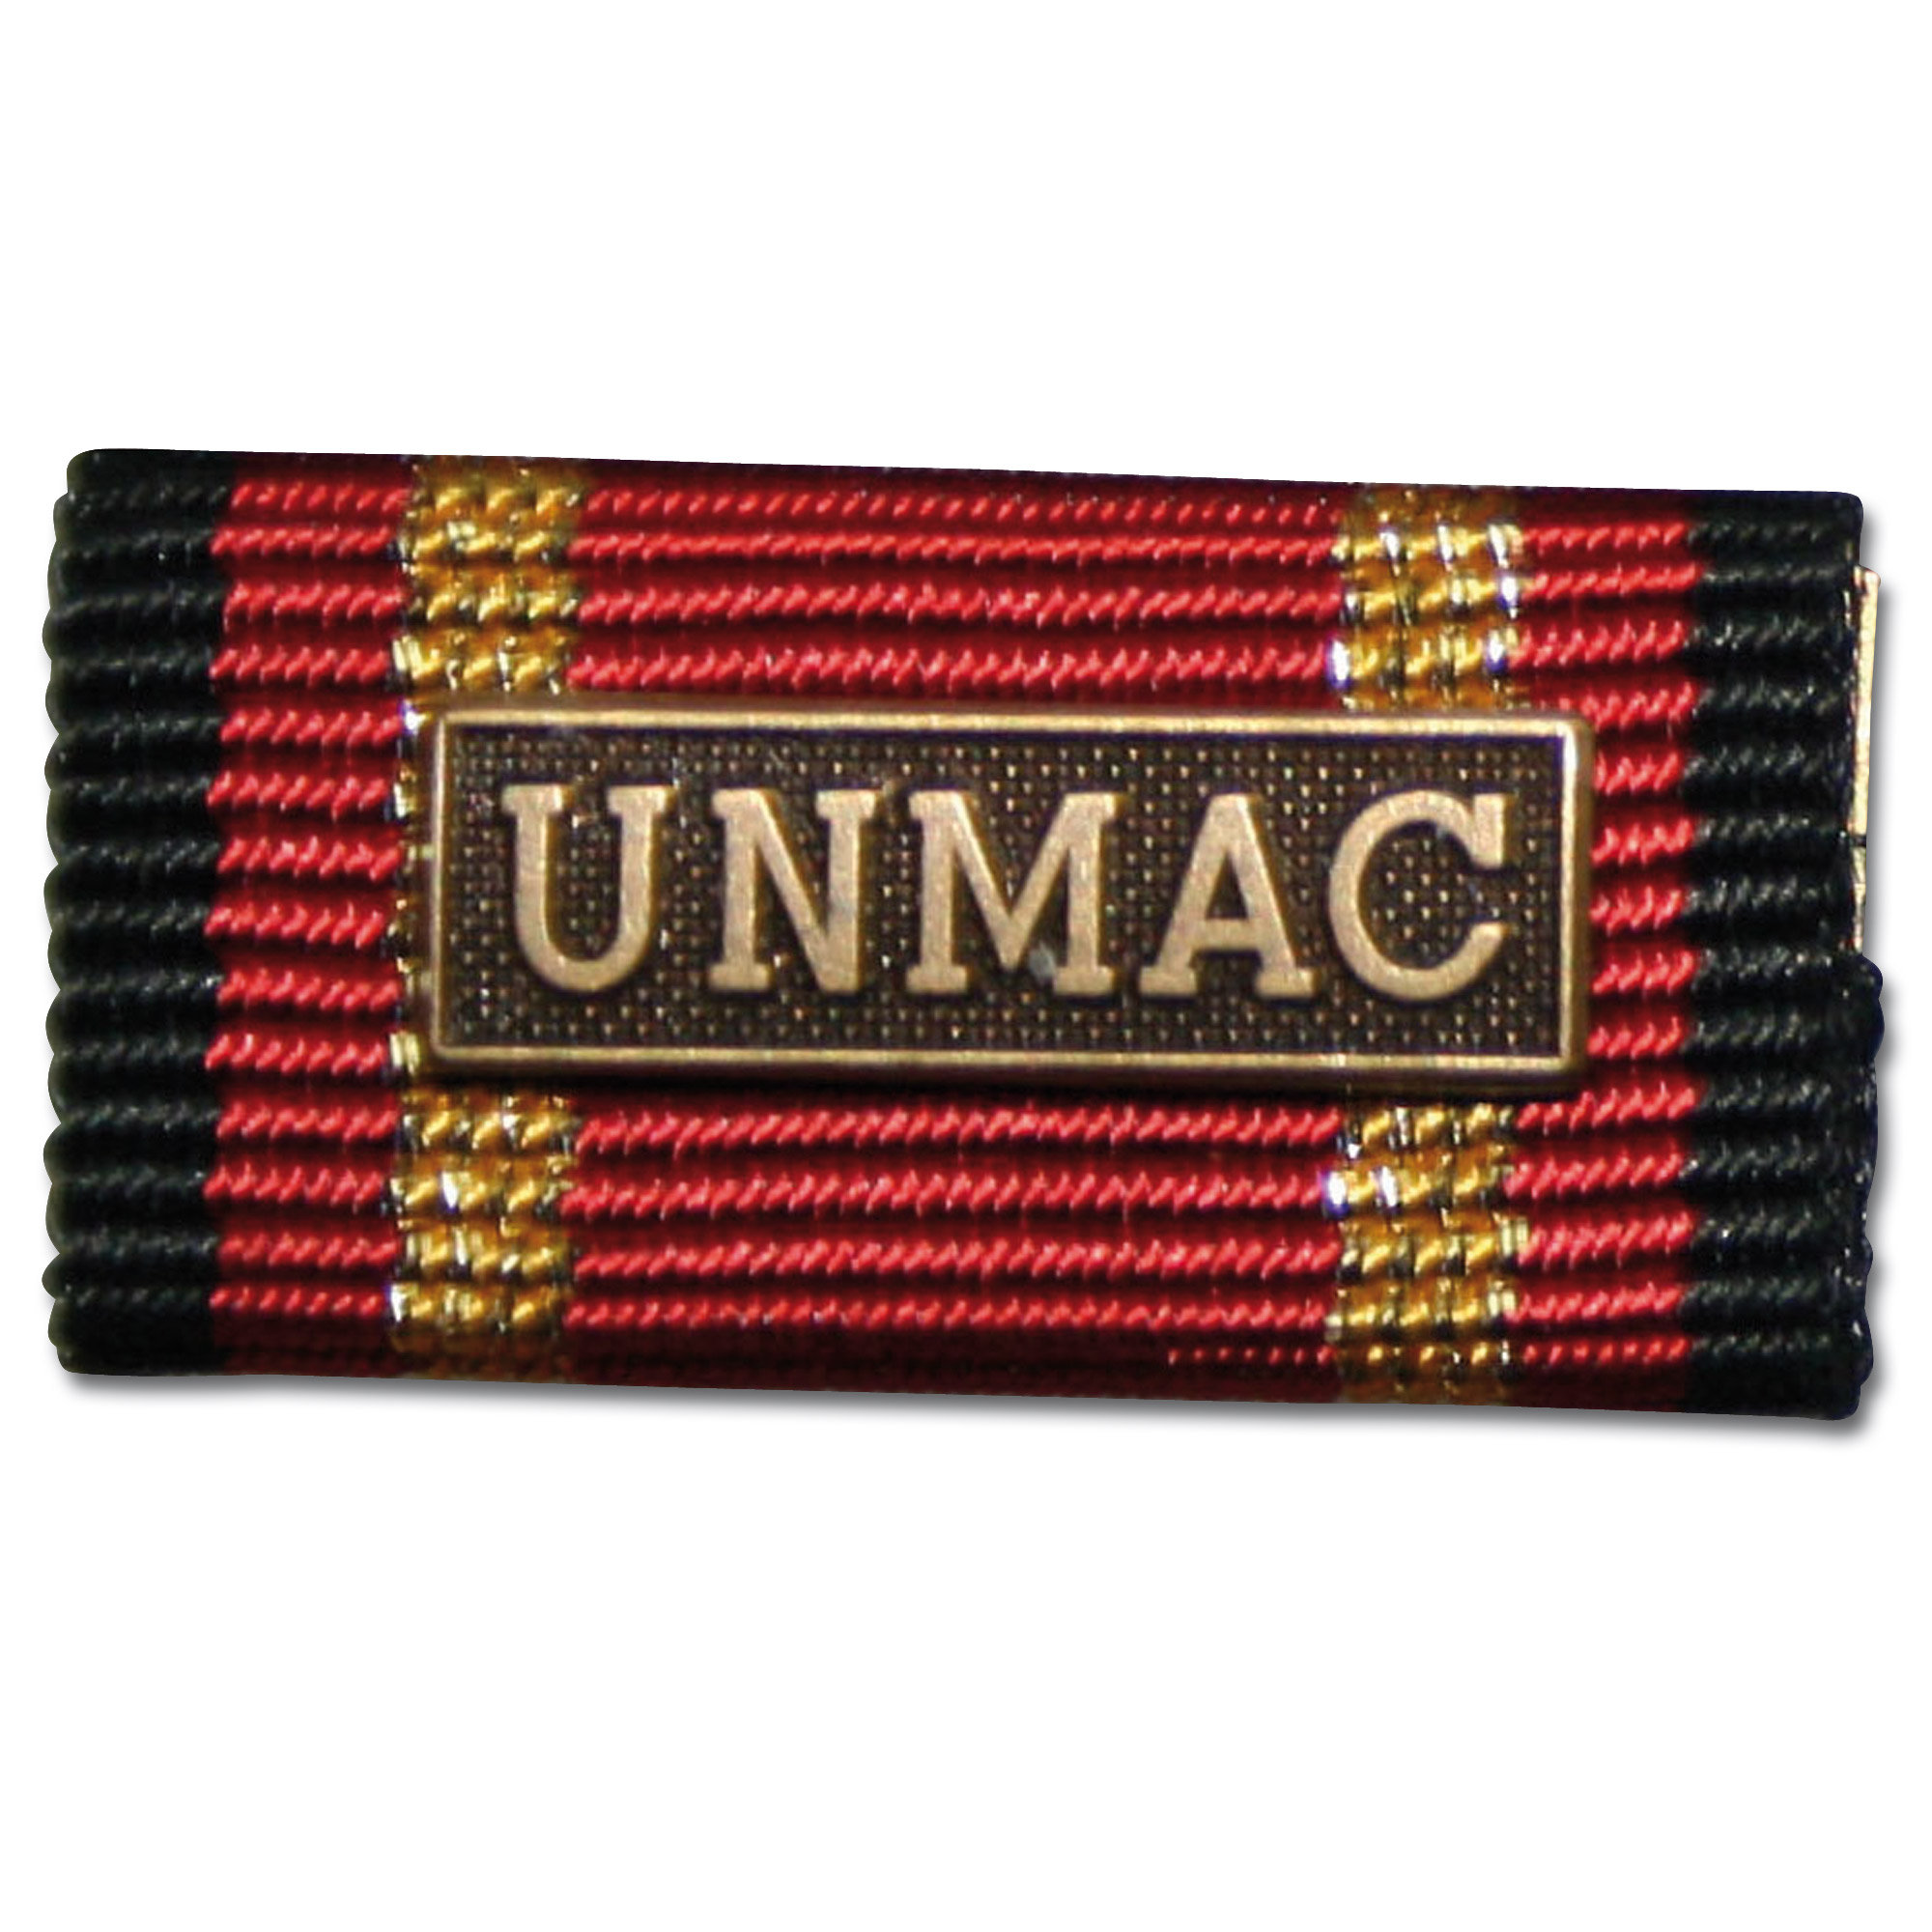 ASMC Ordensspange Auslandseinsatz MINUSMA bronze 